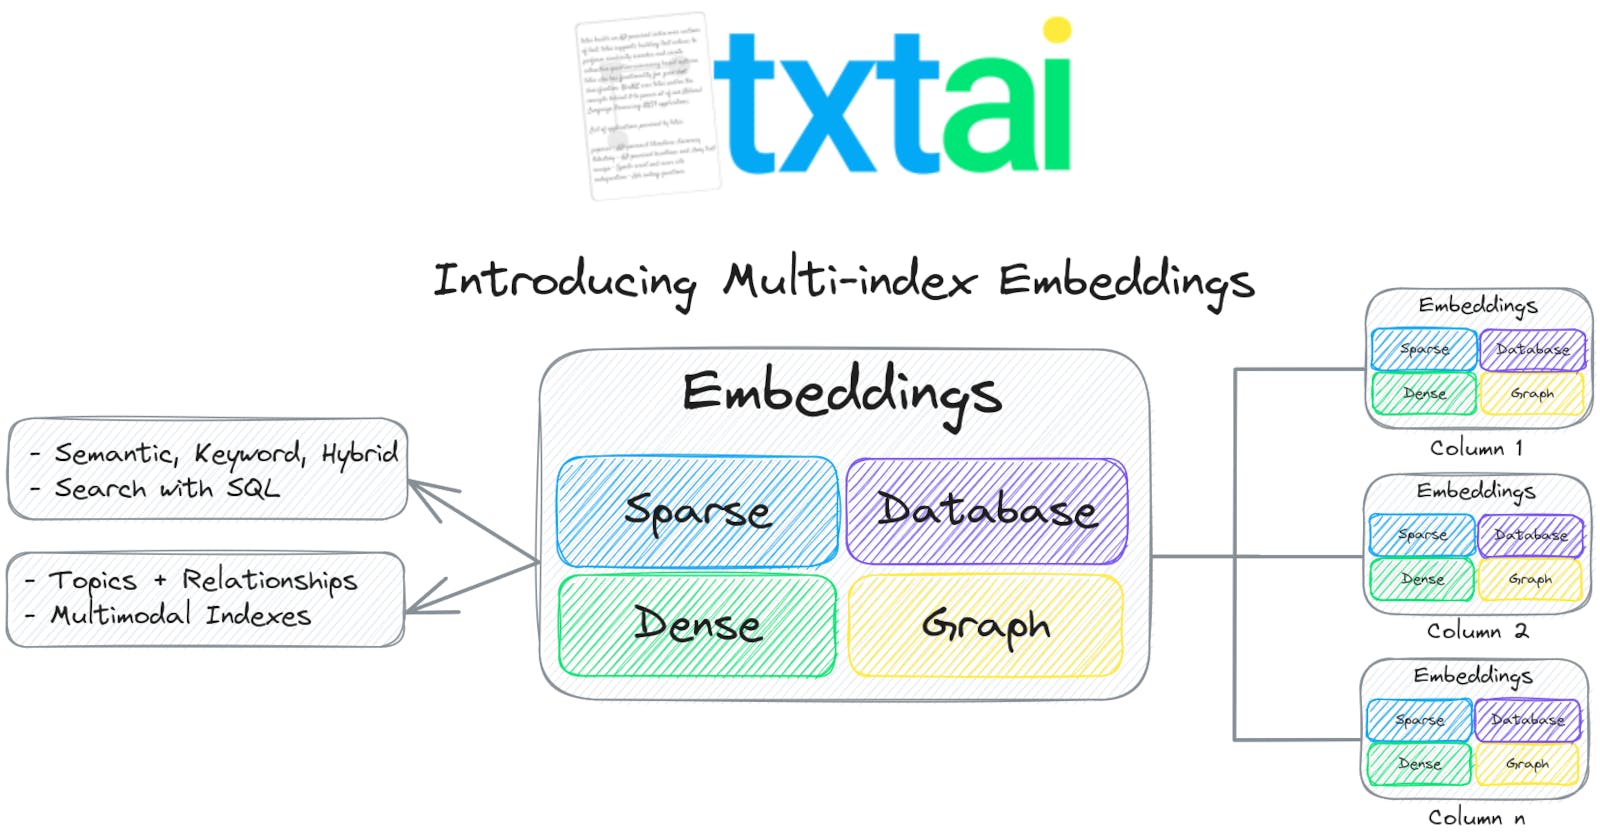 💡 What's new in txtai 6.0